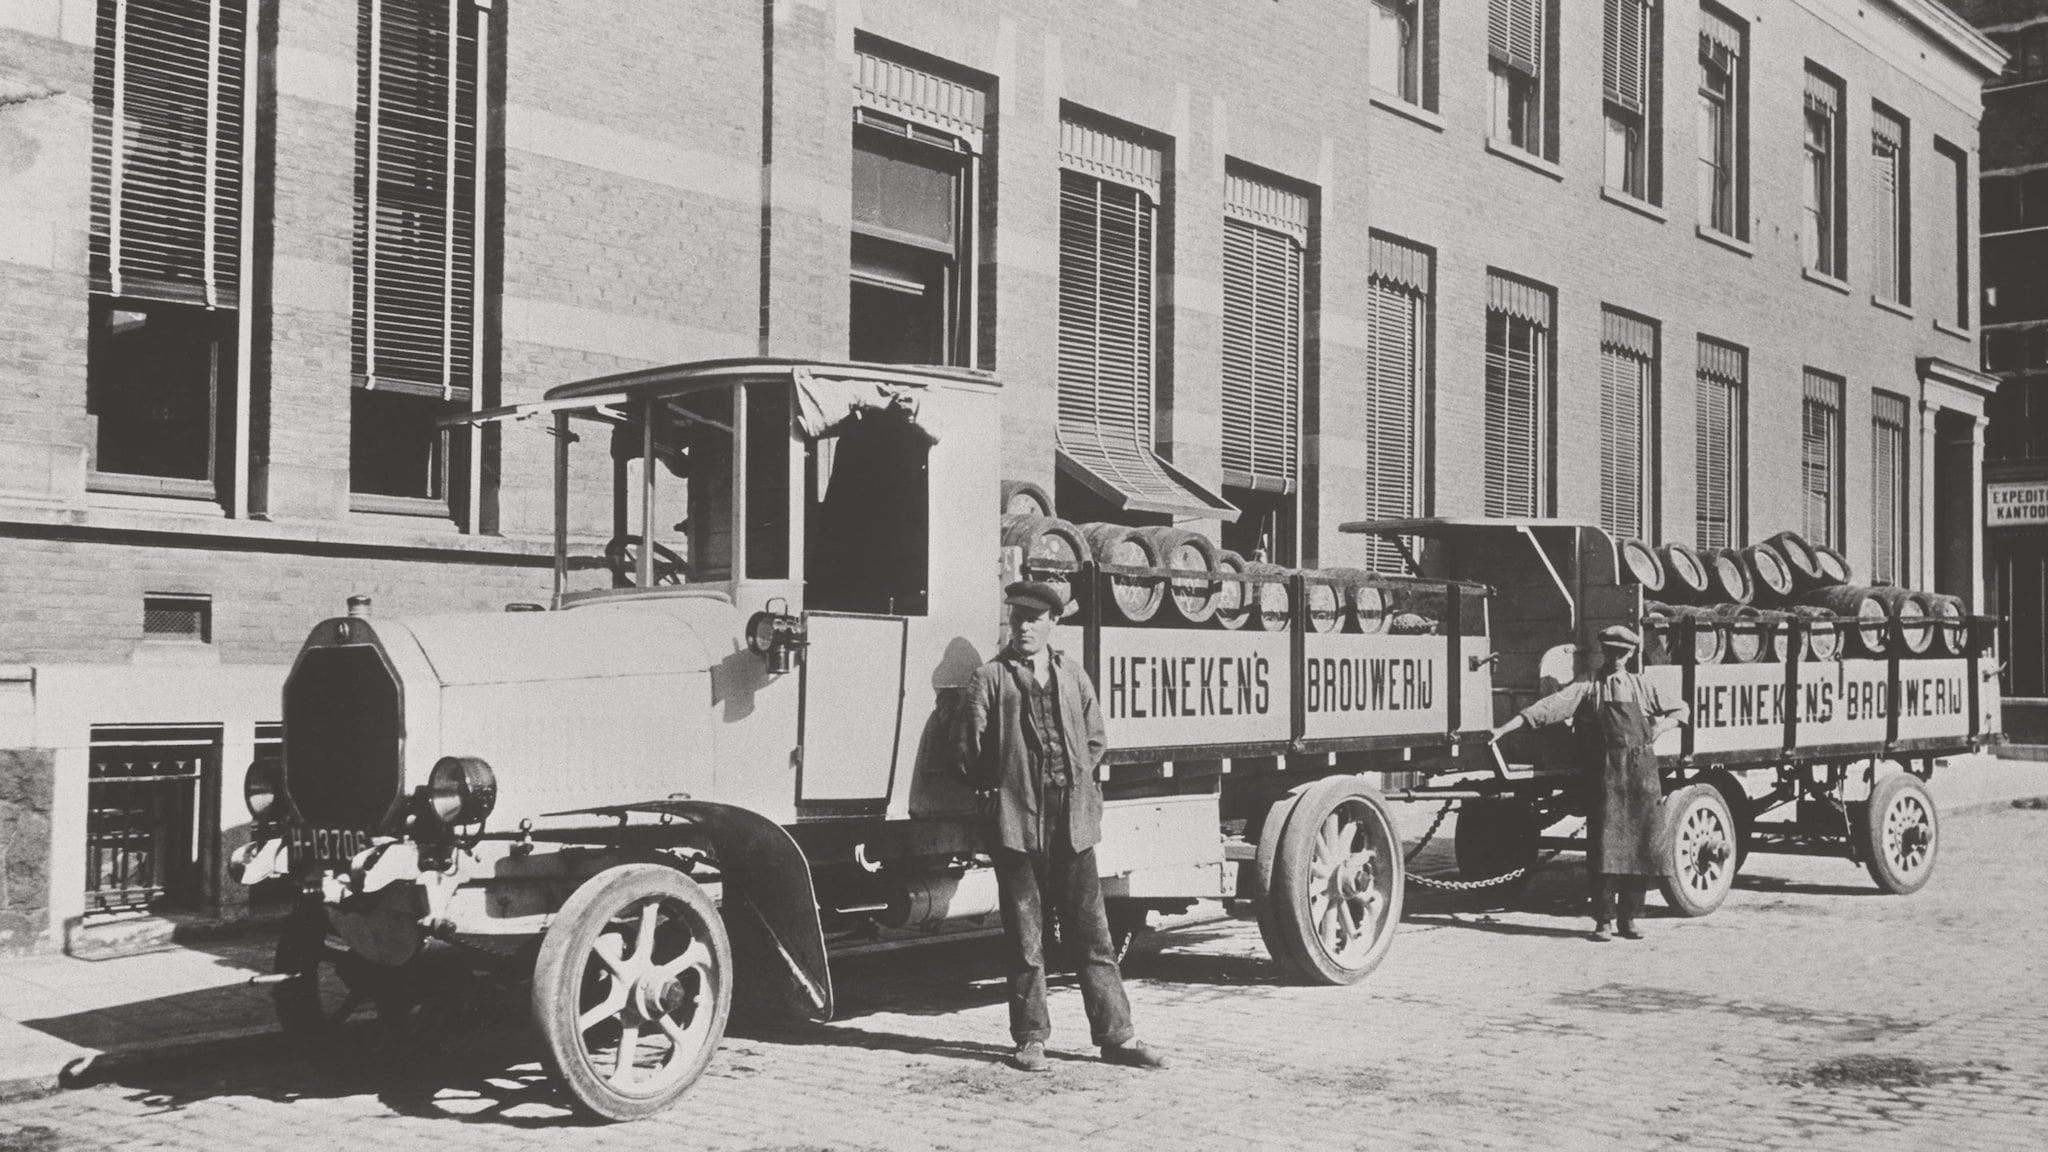 Heineken employees fill trucks with barrels of beer in 1864